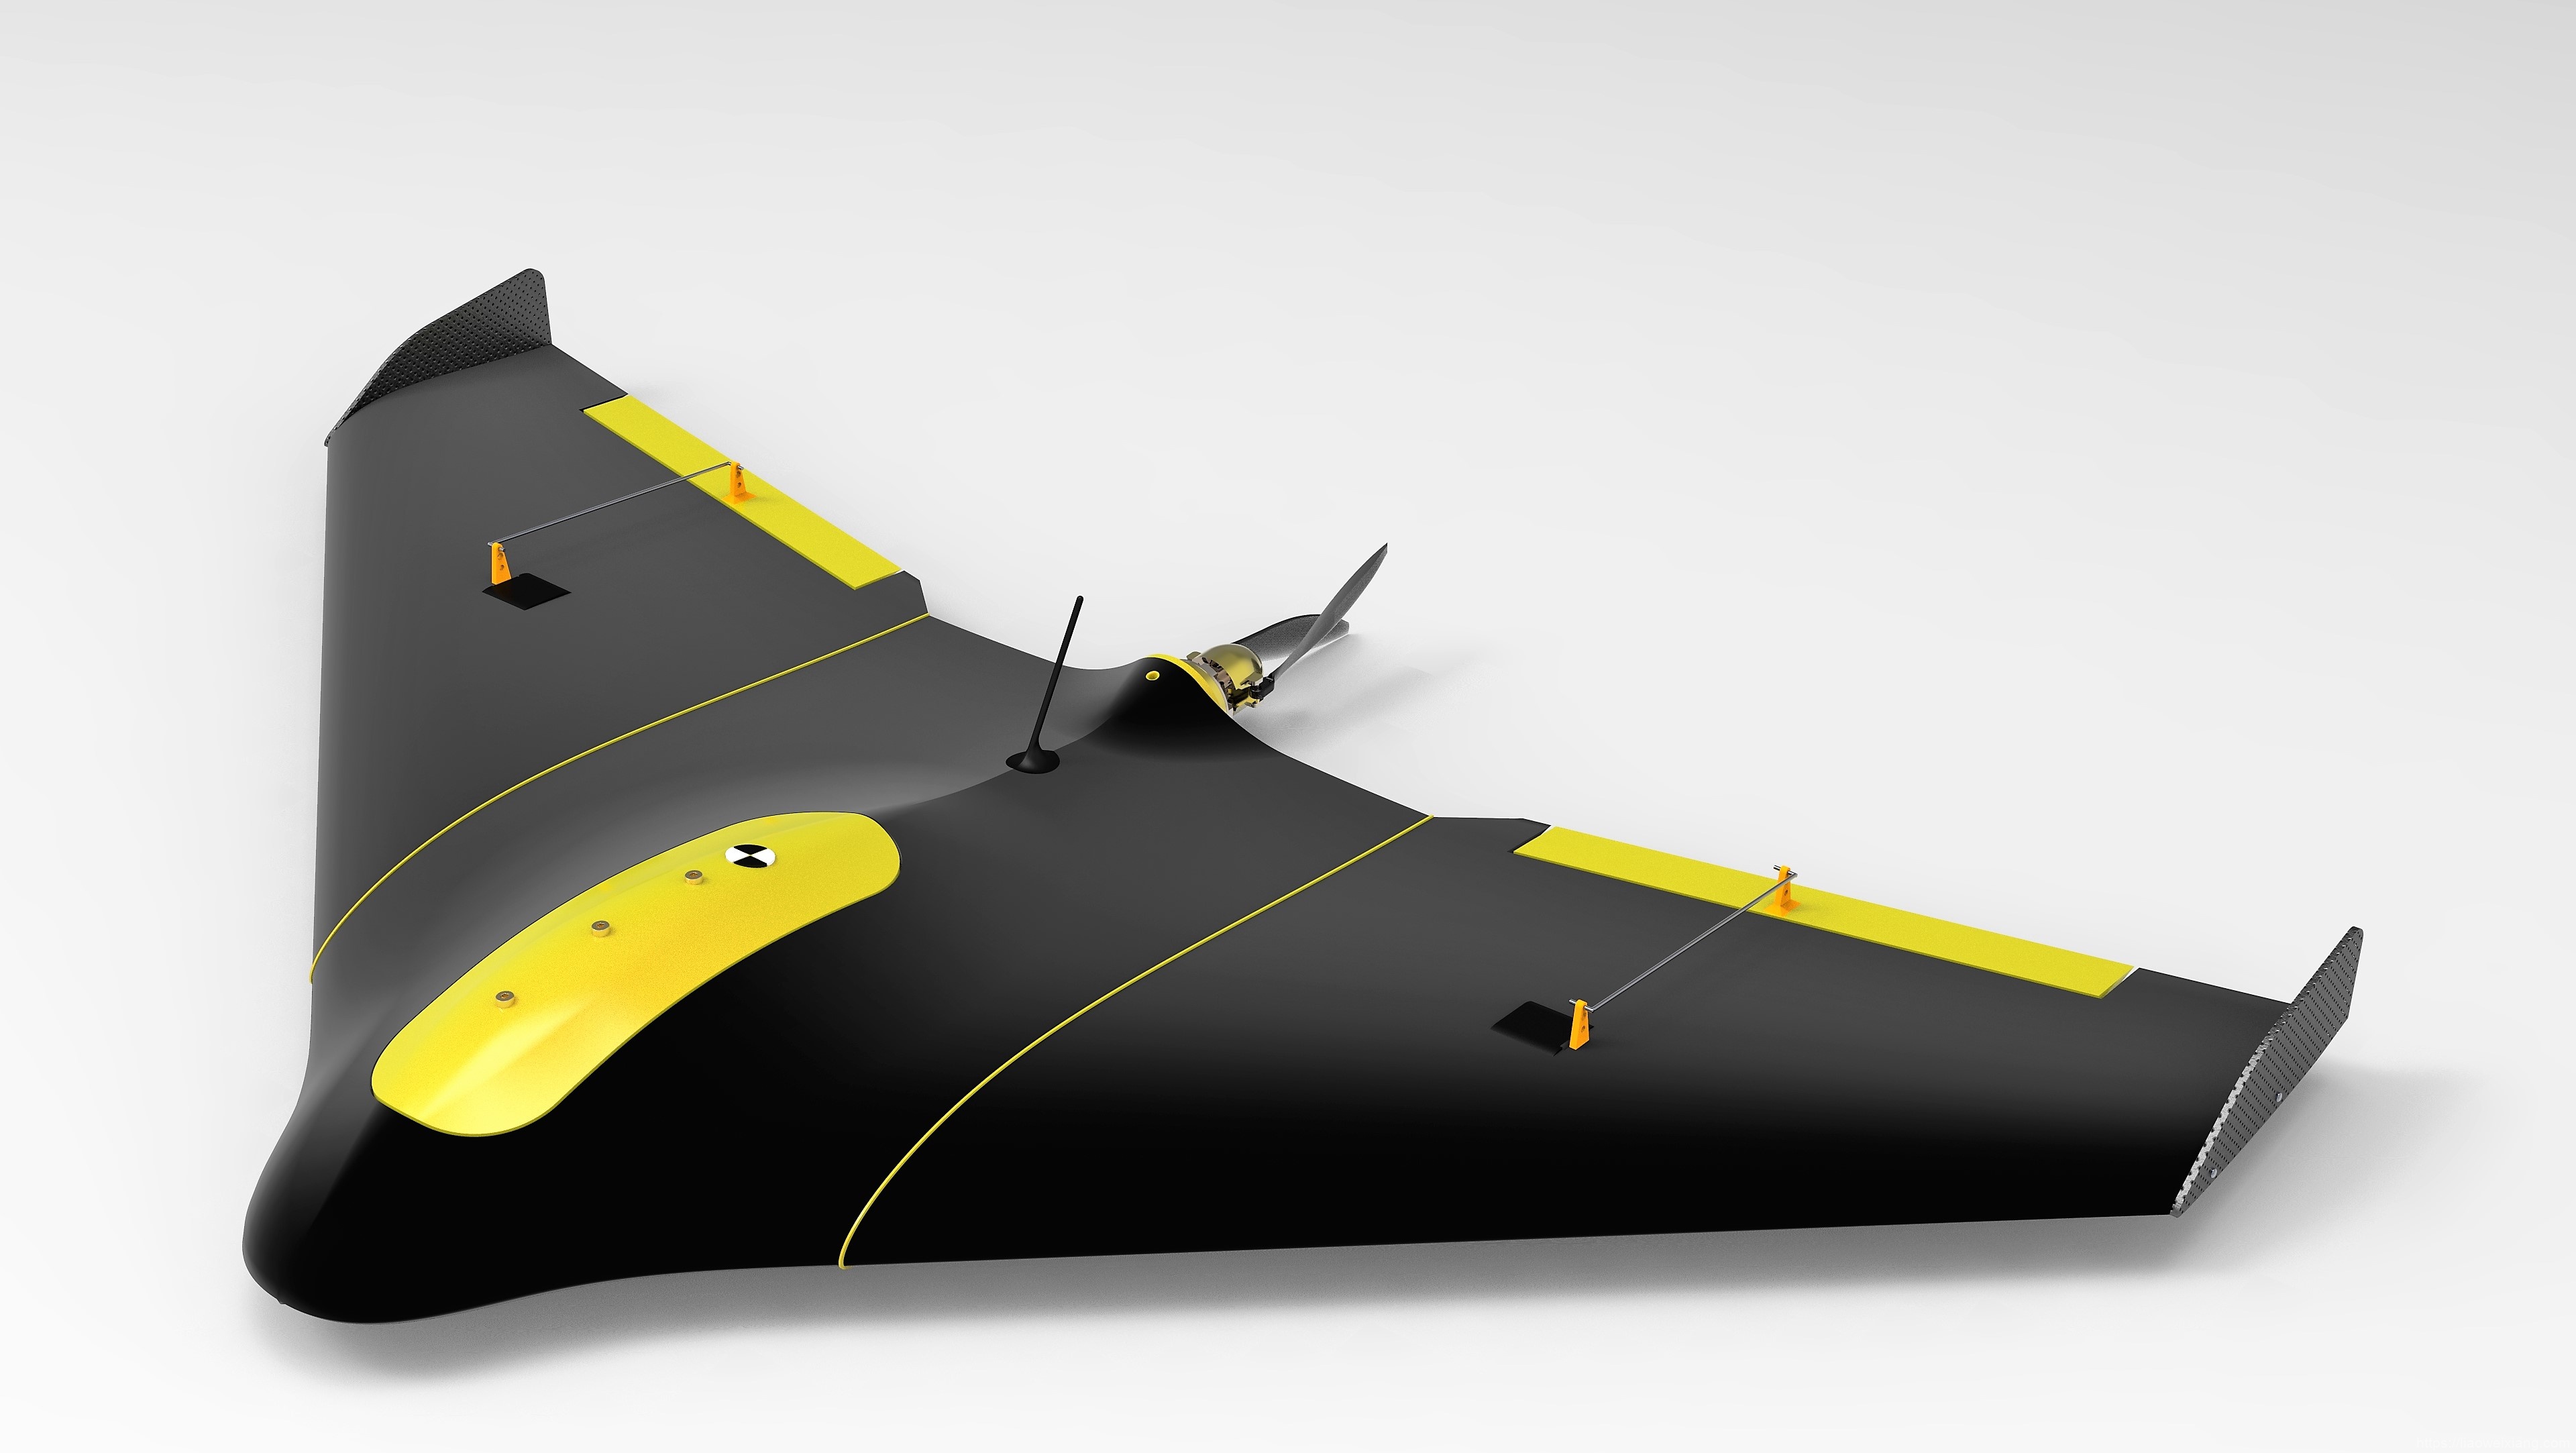 LE Agriculteur UAV无人机模型3D图纸STPE、SLDPRT格式 Solidworks设计